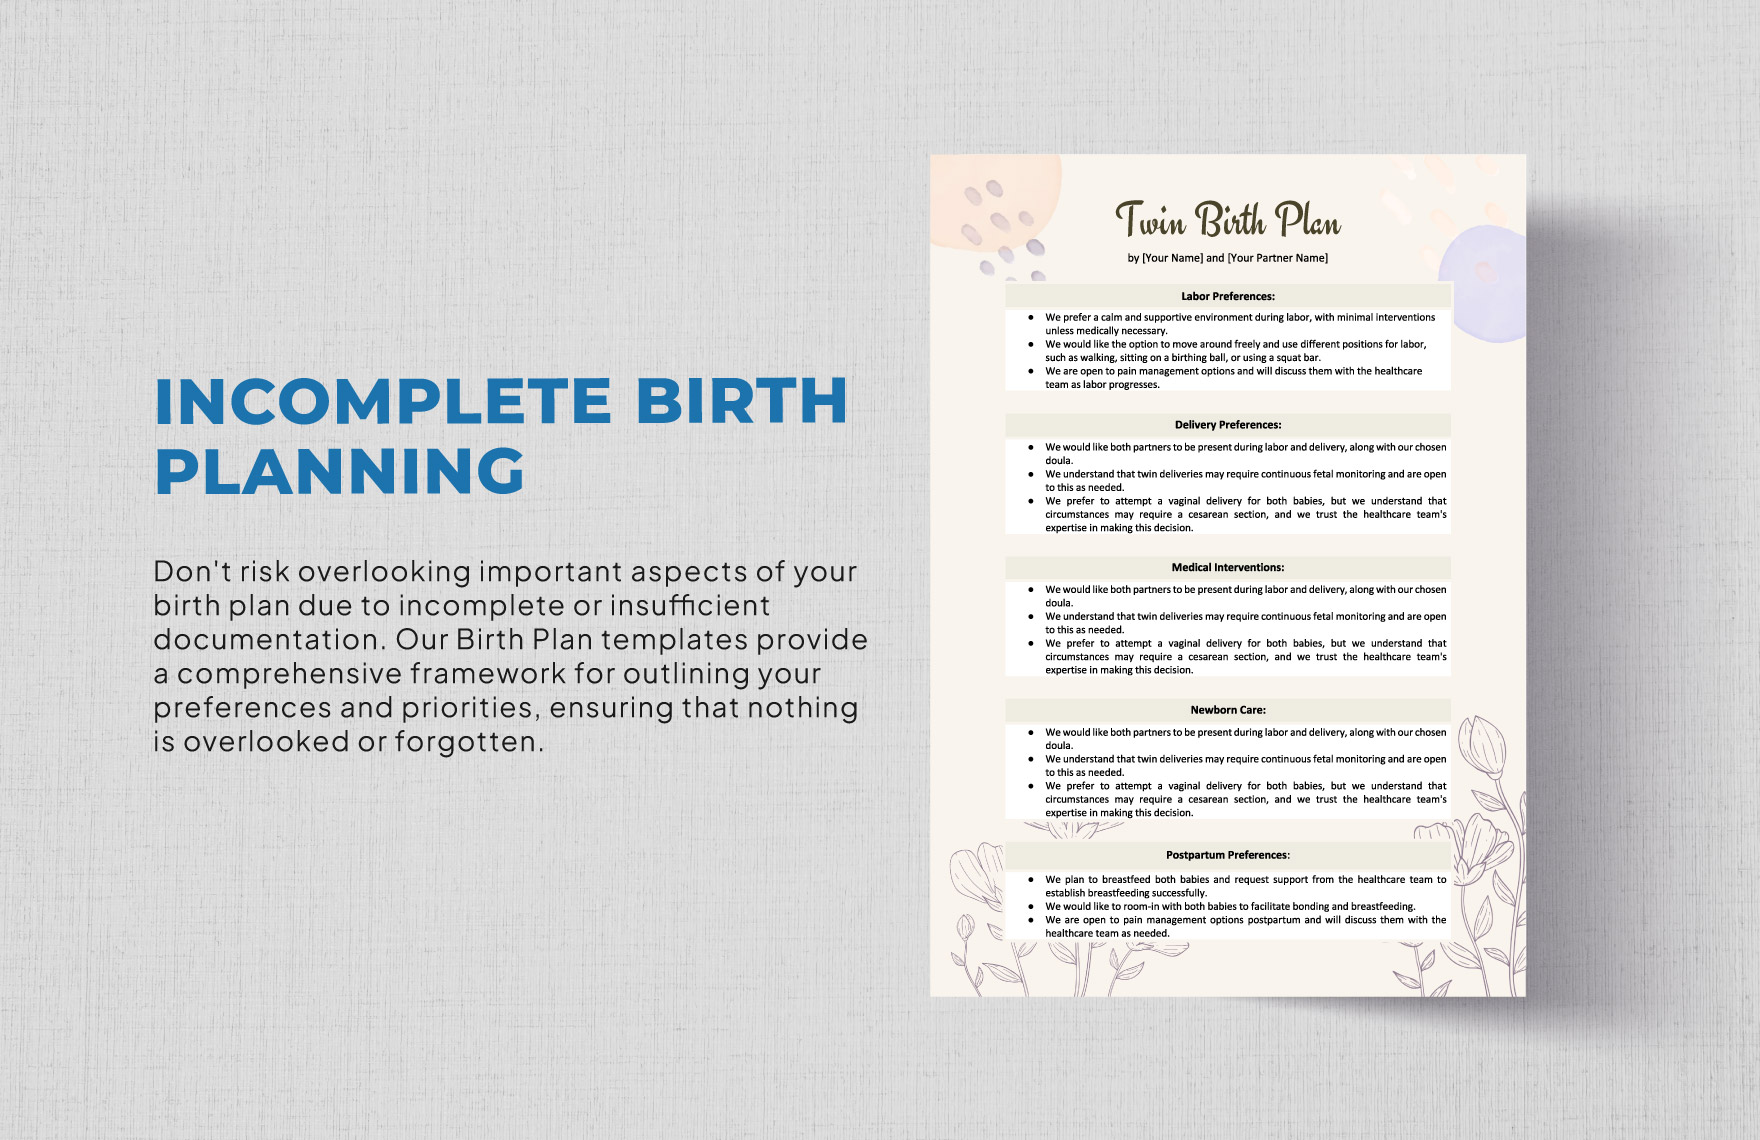 Twin Birth Plan Template